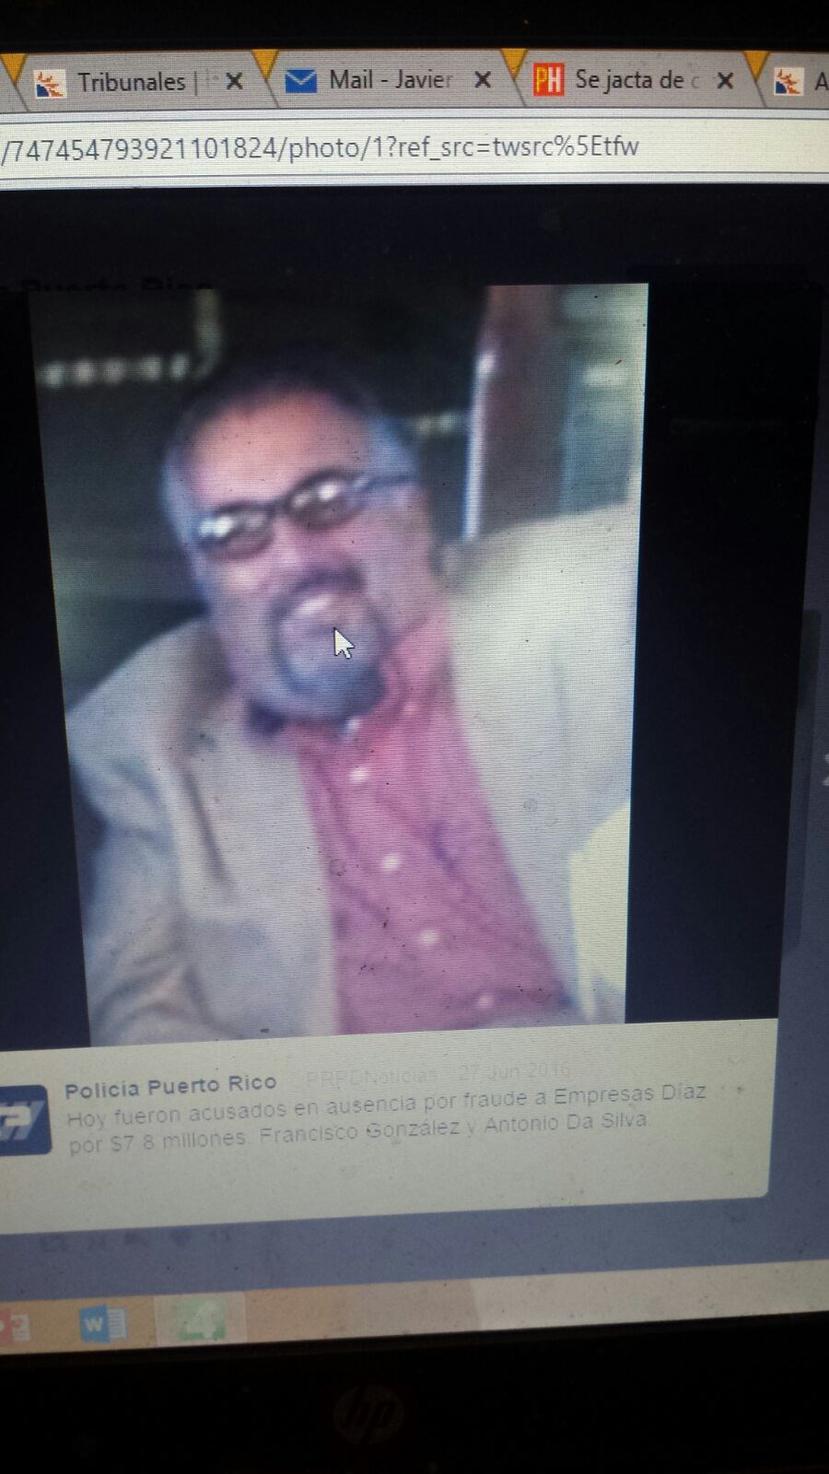 Da Silva Castro (en la foto) fue acusado en ausencia junto a Francisco Javier González Alvarez. (Suministrada)